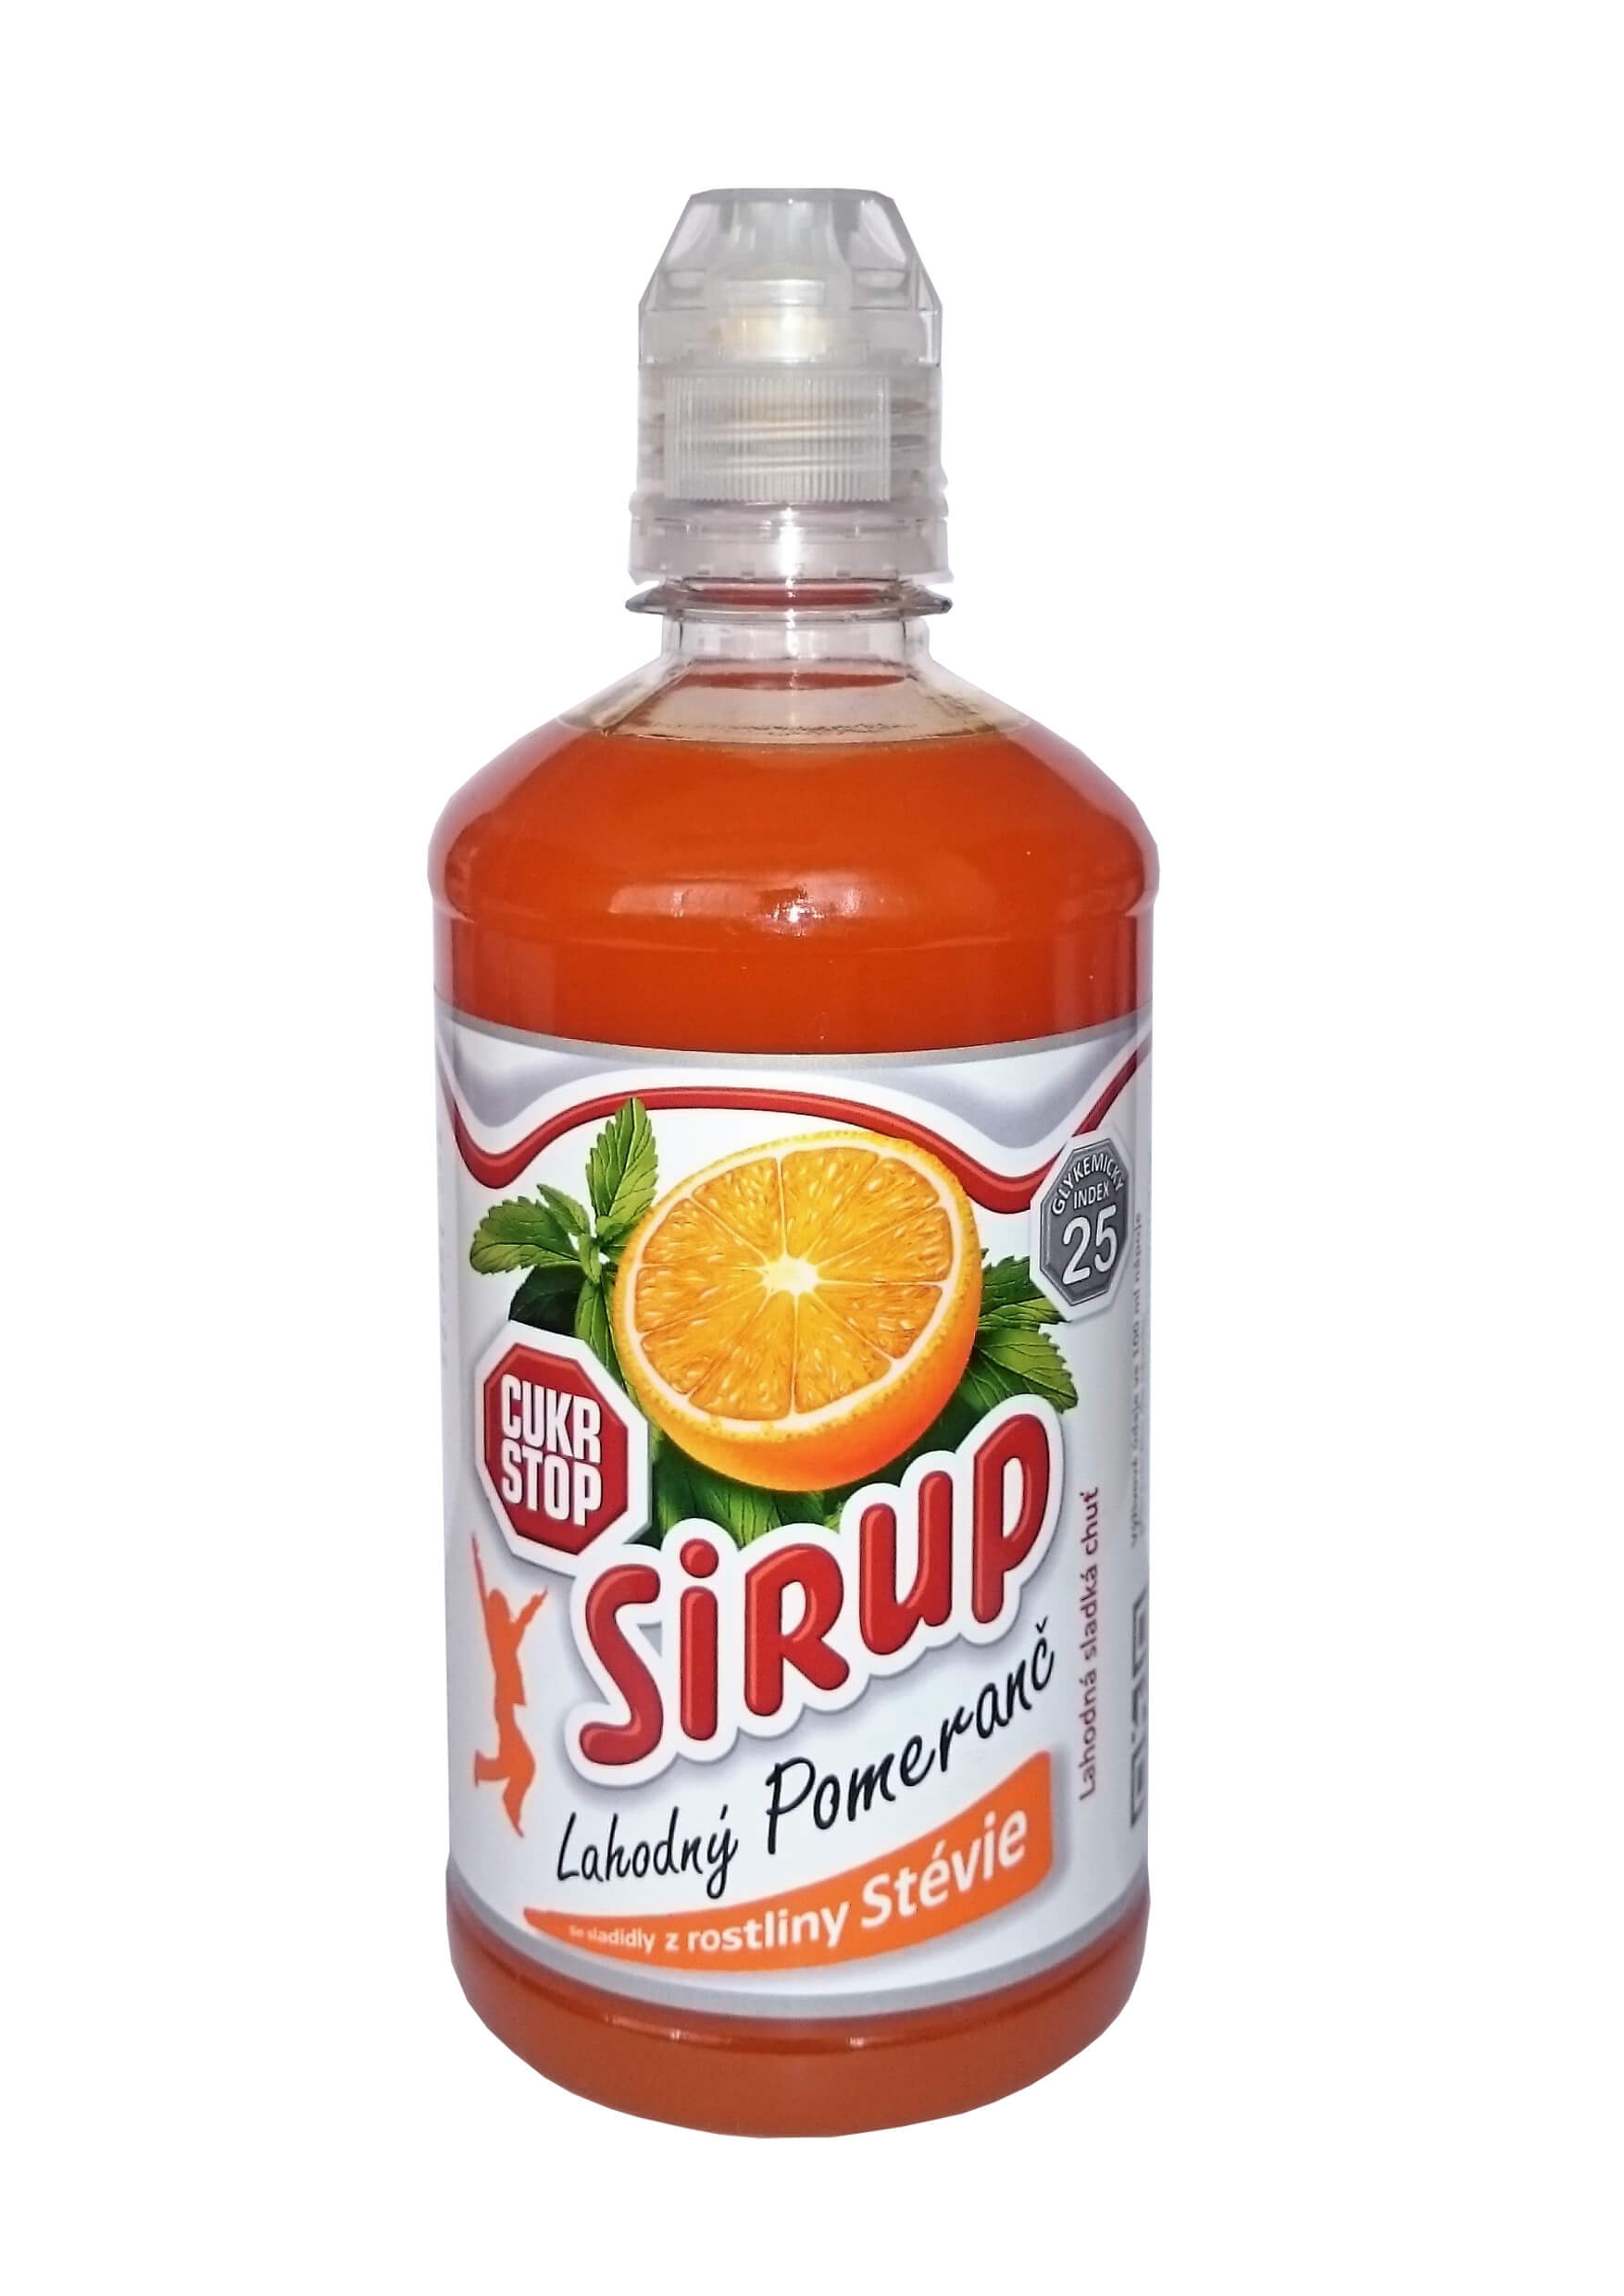 Zobrazit detail výrobku CukrStop Sirup se sladidly z rostliny stévie - lahodný pomeranč 650 g